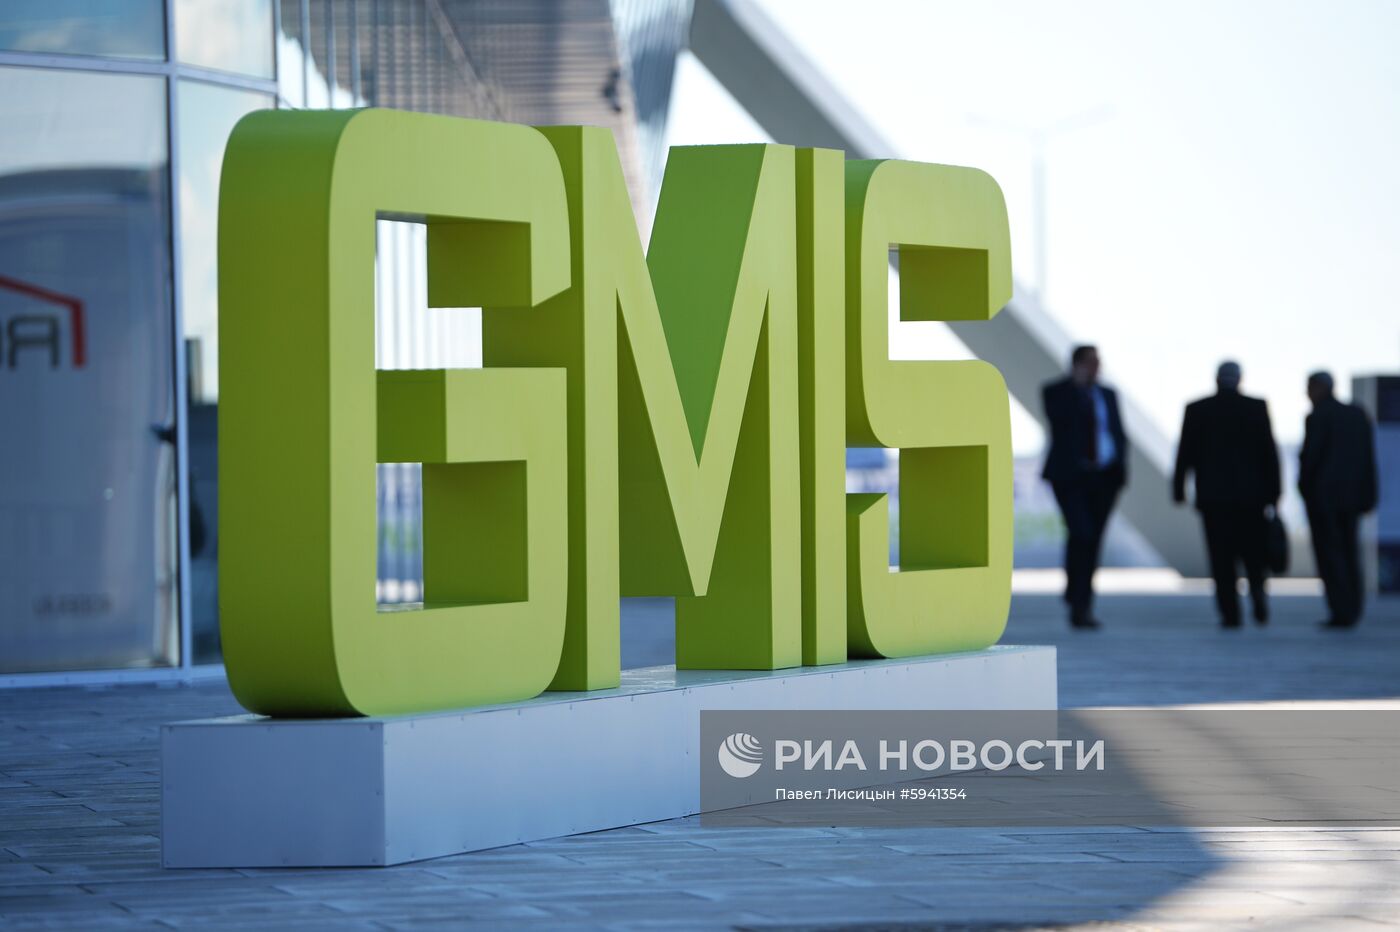 Глобальный саммит по производству и индустриализации GMIS